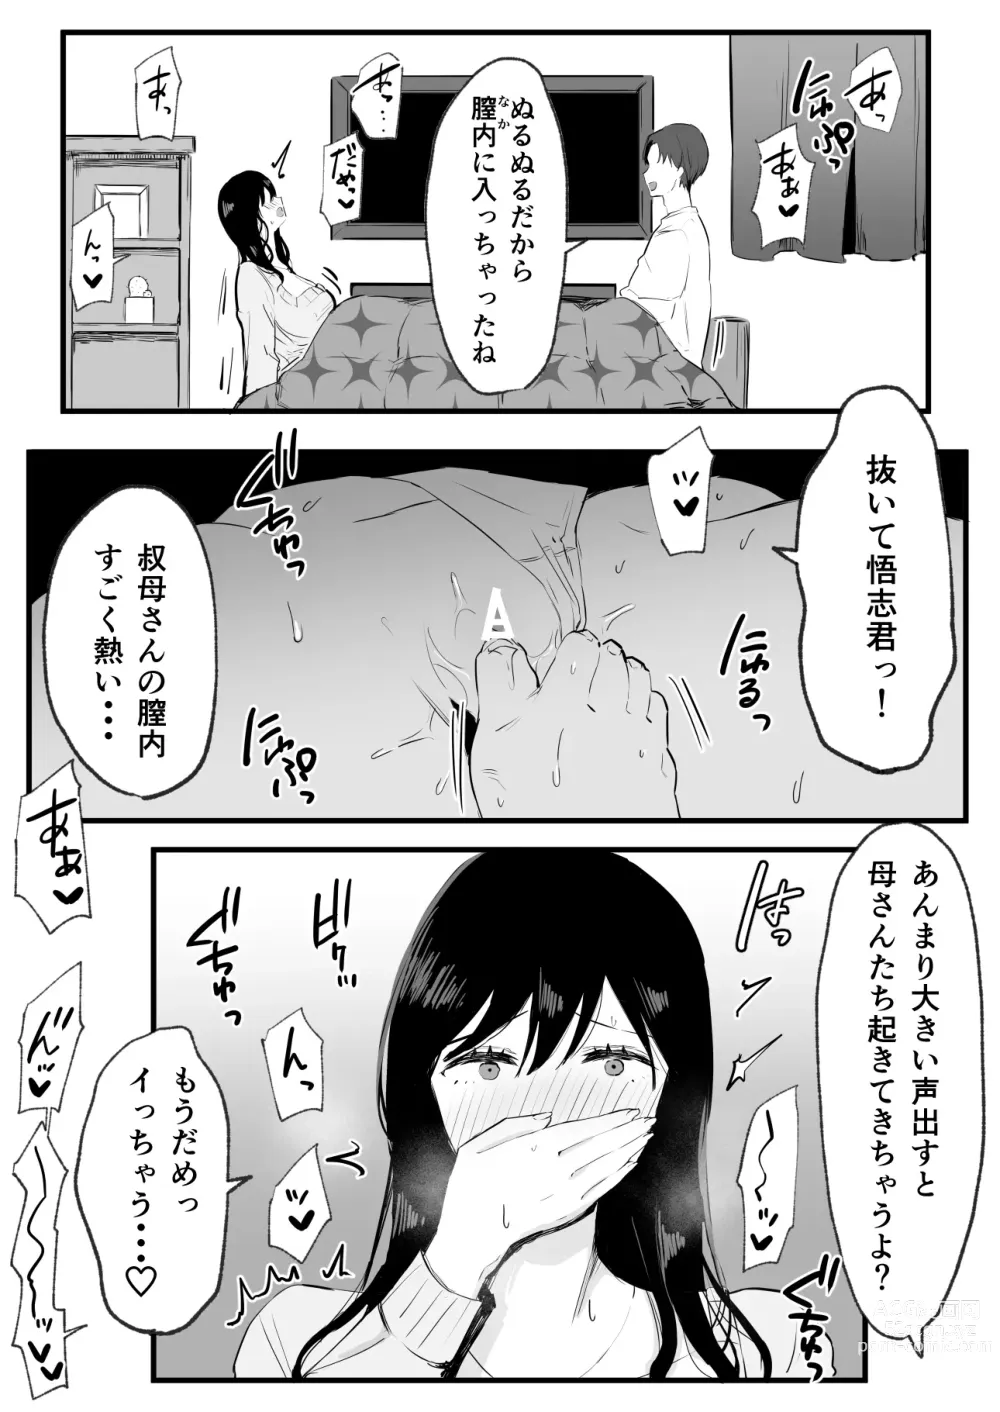 Page 6 of doujinshi Kyounyuu de Bijin na Obasan gan Kotatsu de Onanieshite Takara Asa Made Hamemakutta.